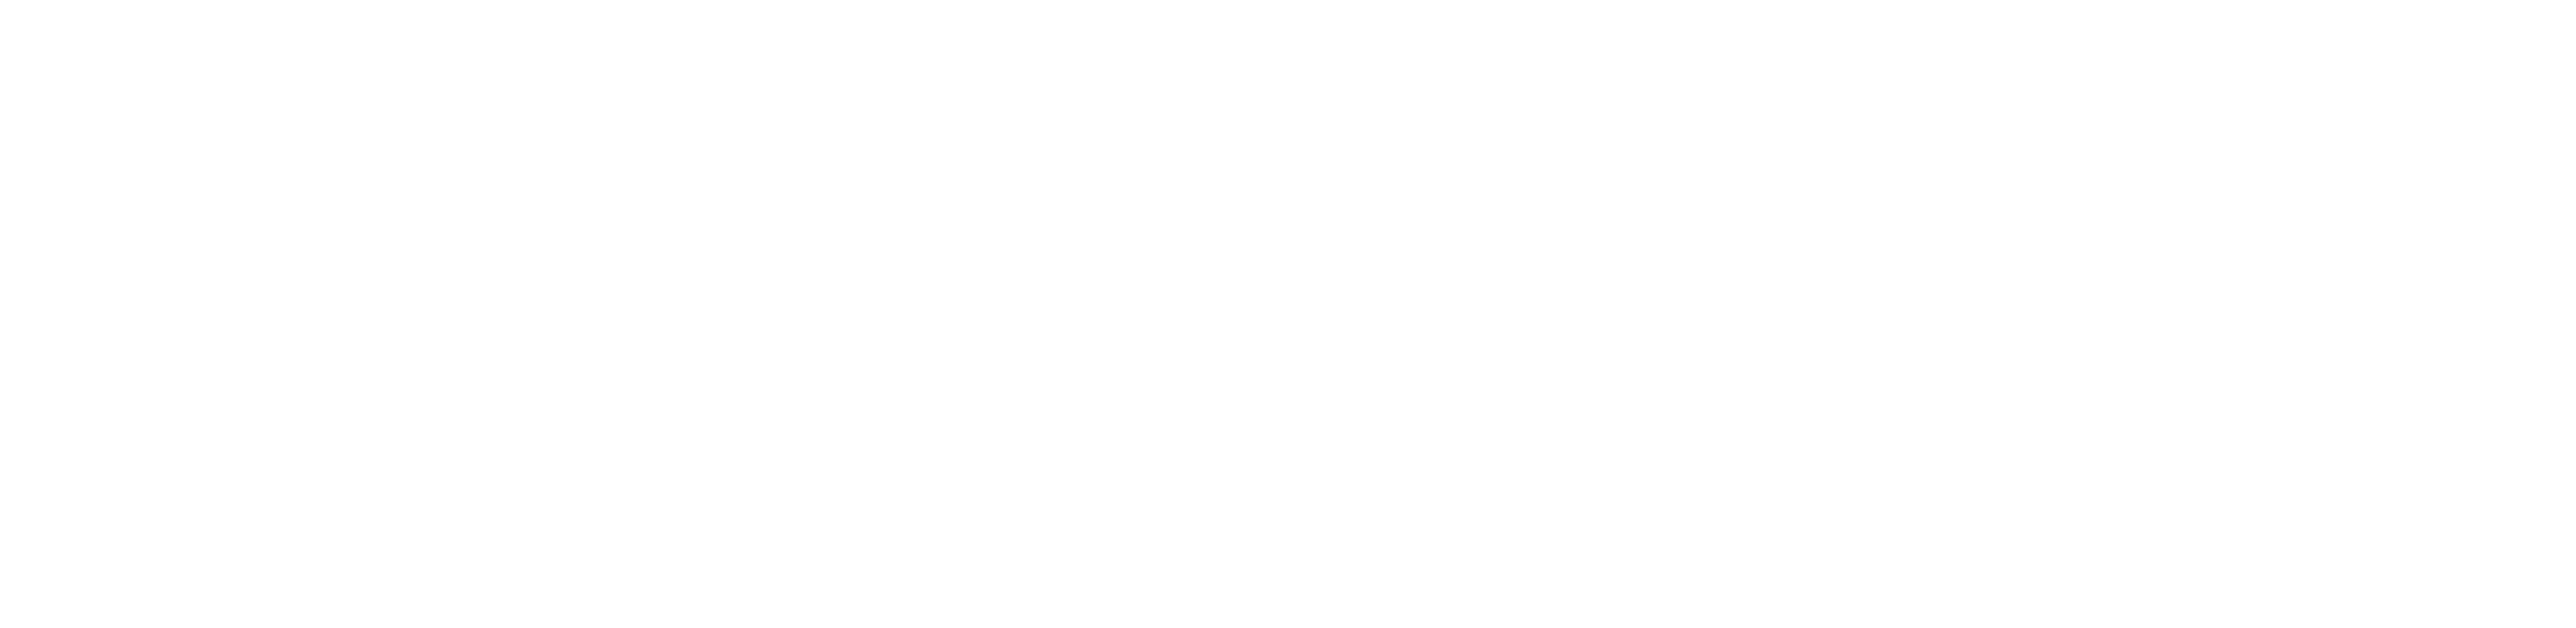 frame-io-logo